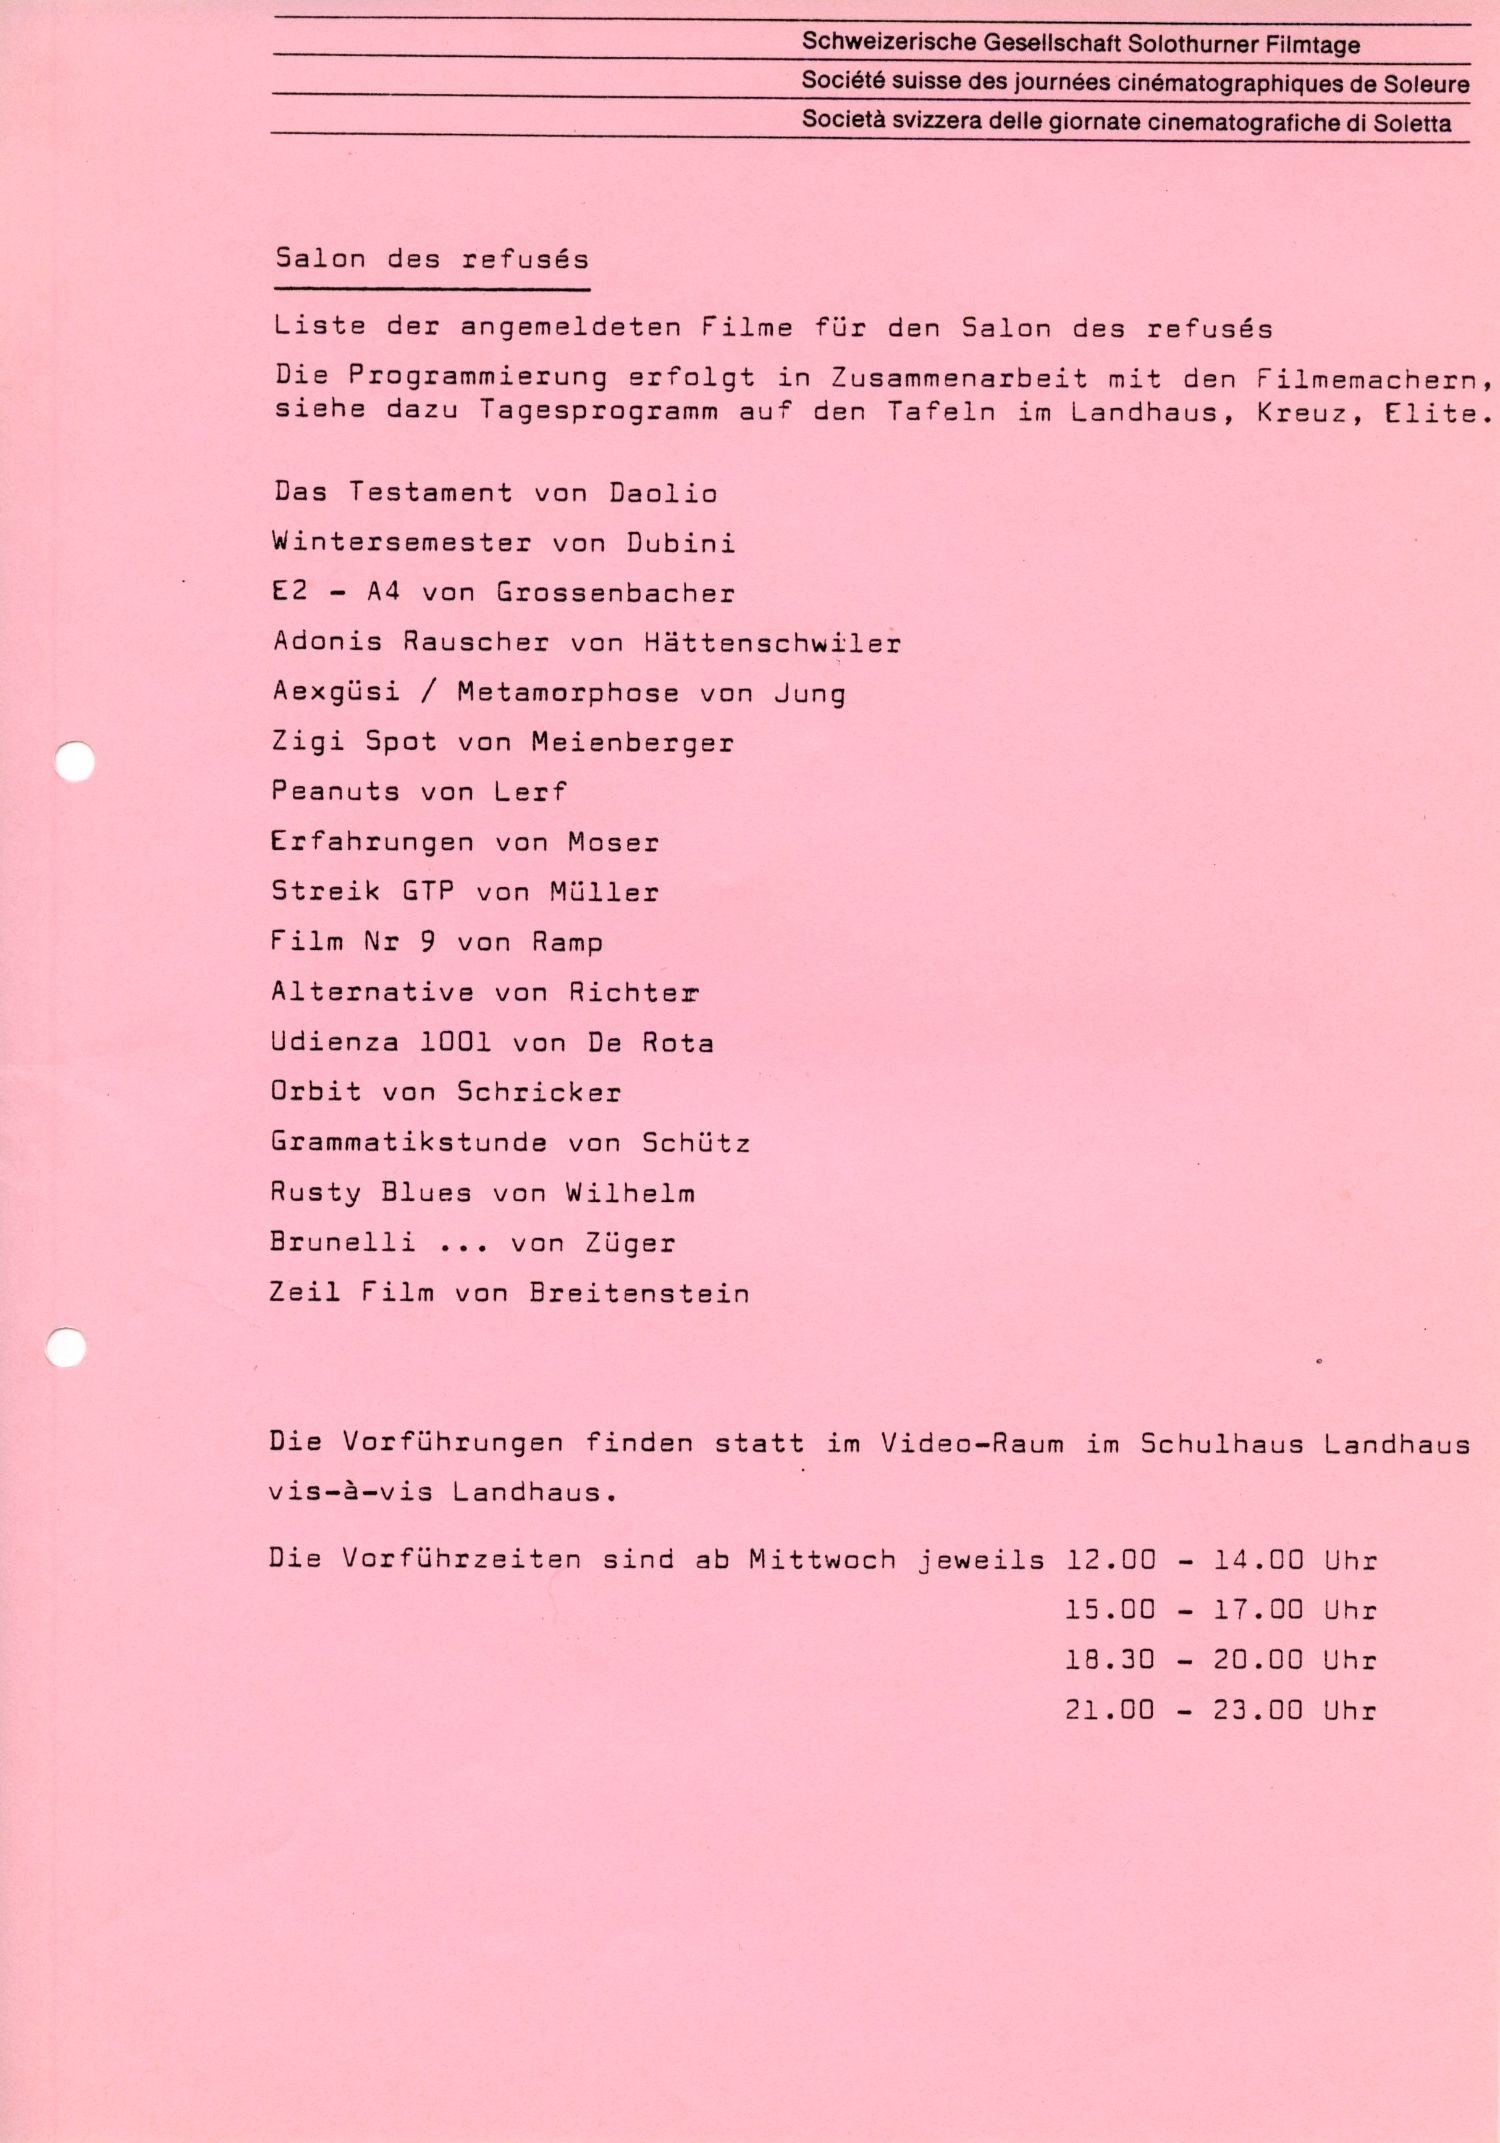 Salon des refusés, 1981